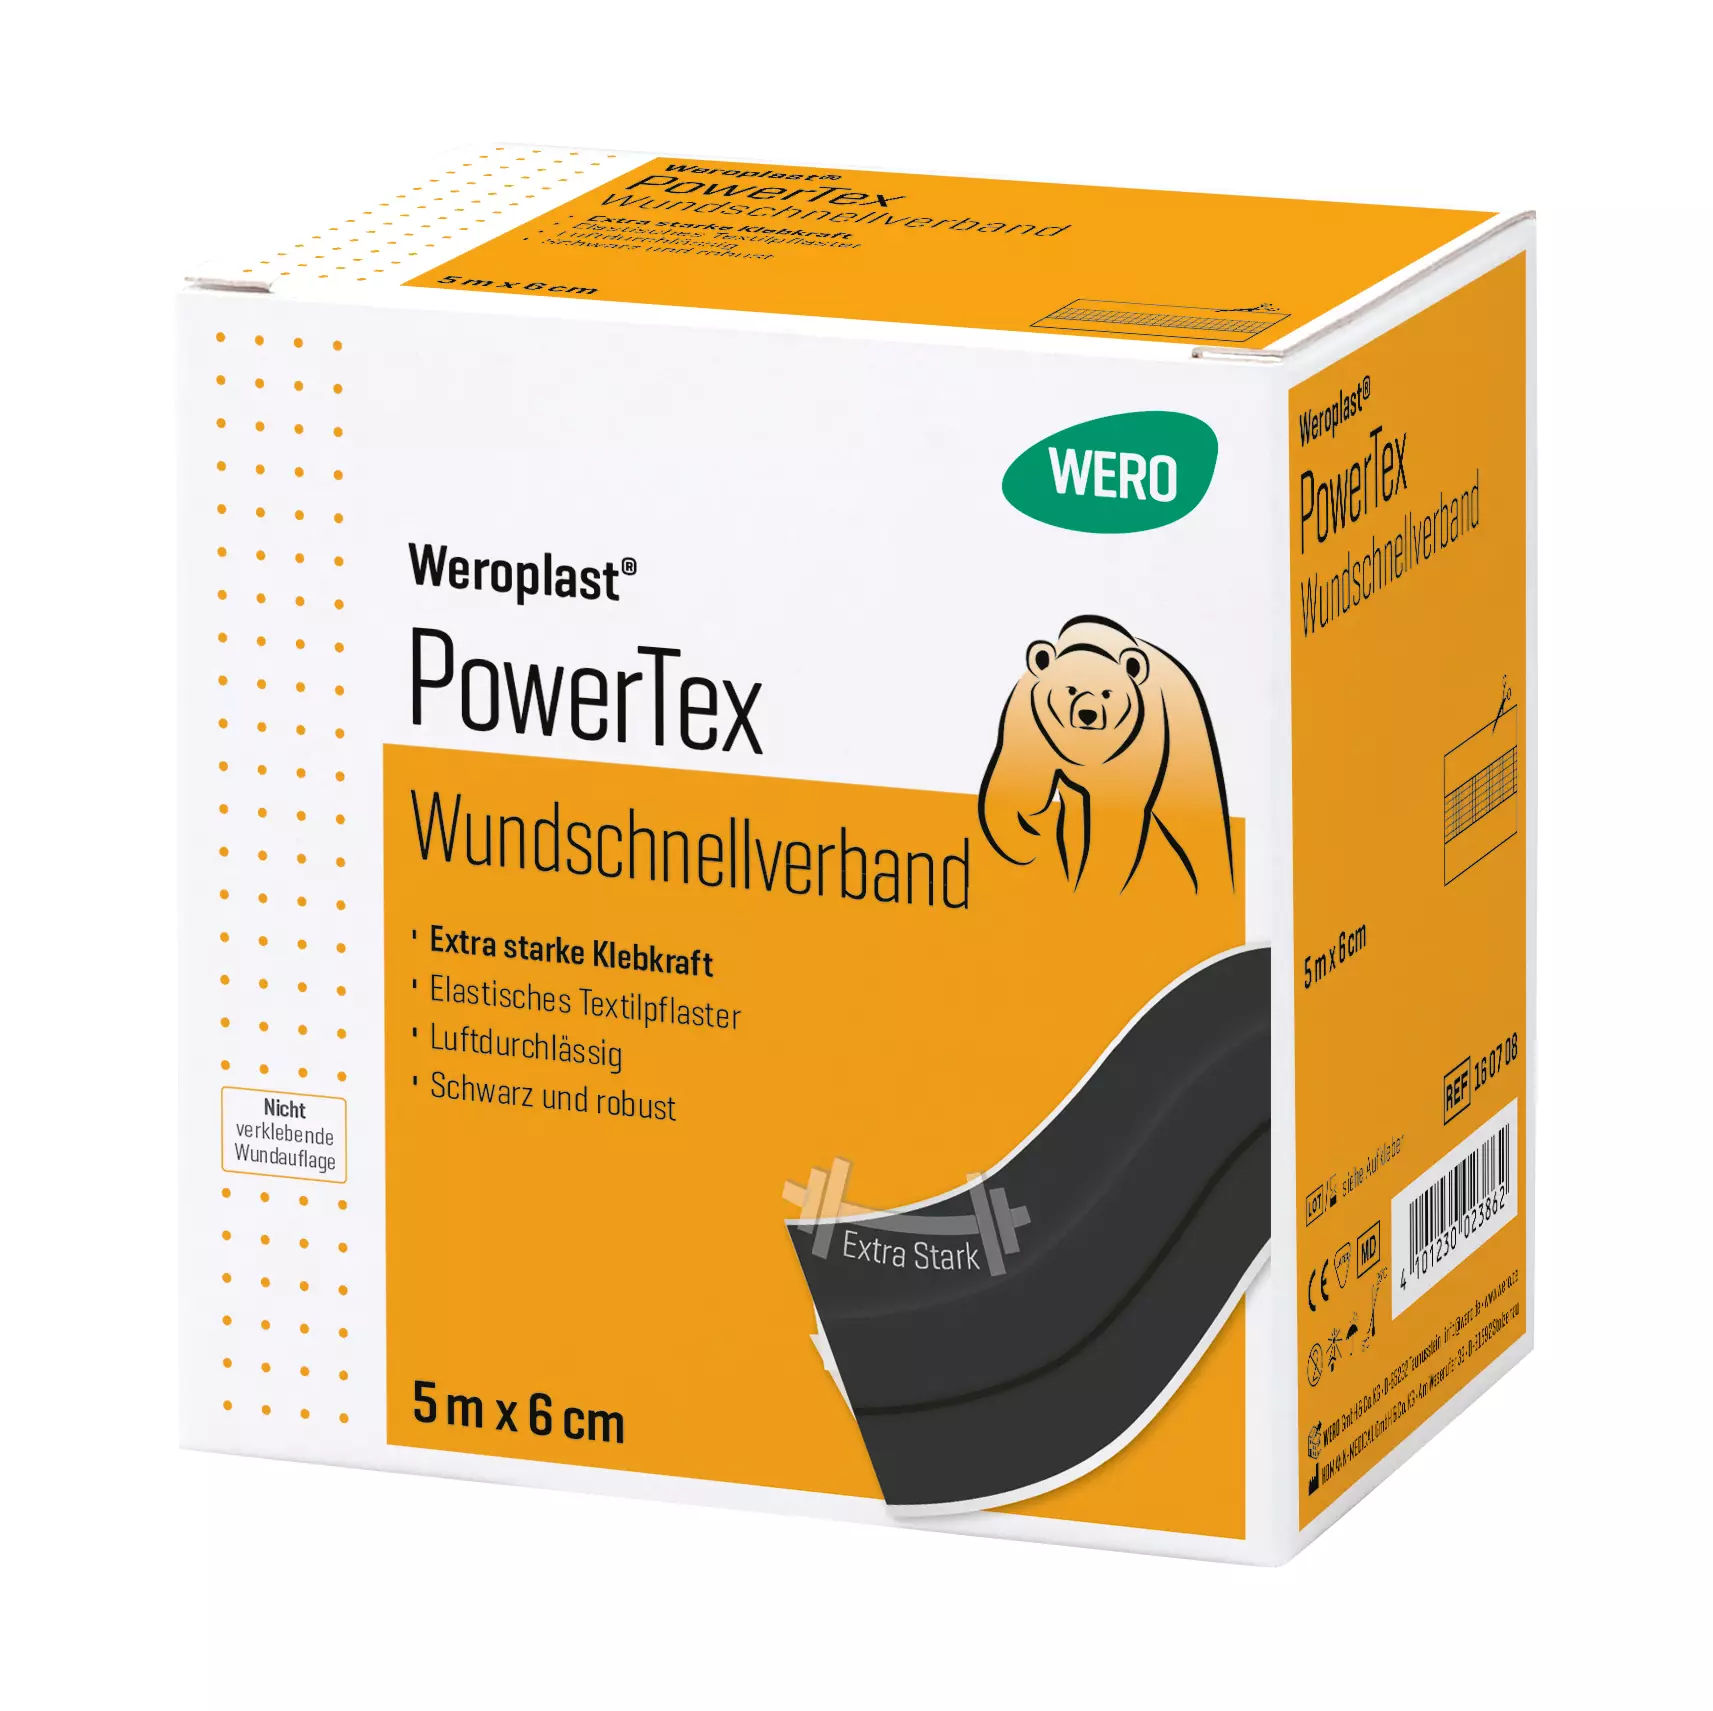 Wundschnellverband Weroplast® PowerTex - 6 cm, 5 m